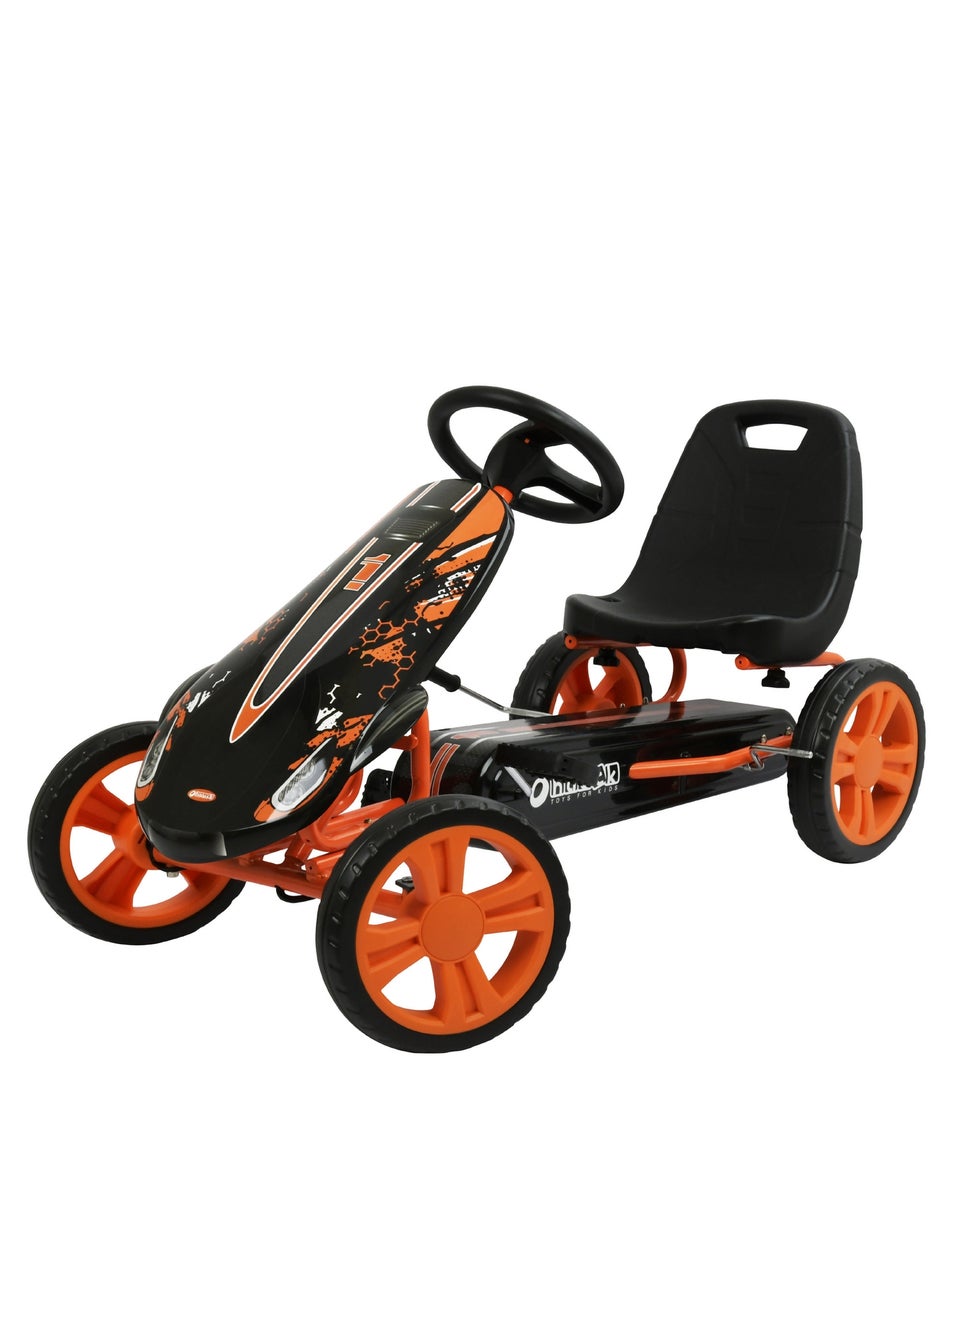 Hauck Orange Speedster Go Kart